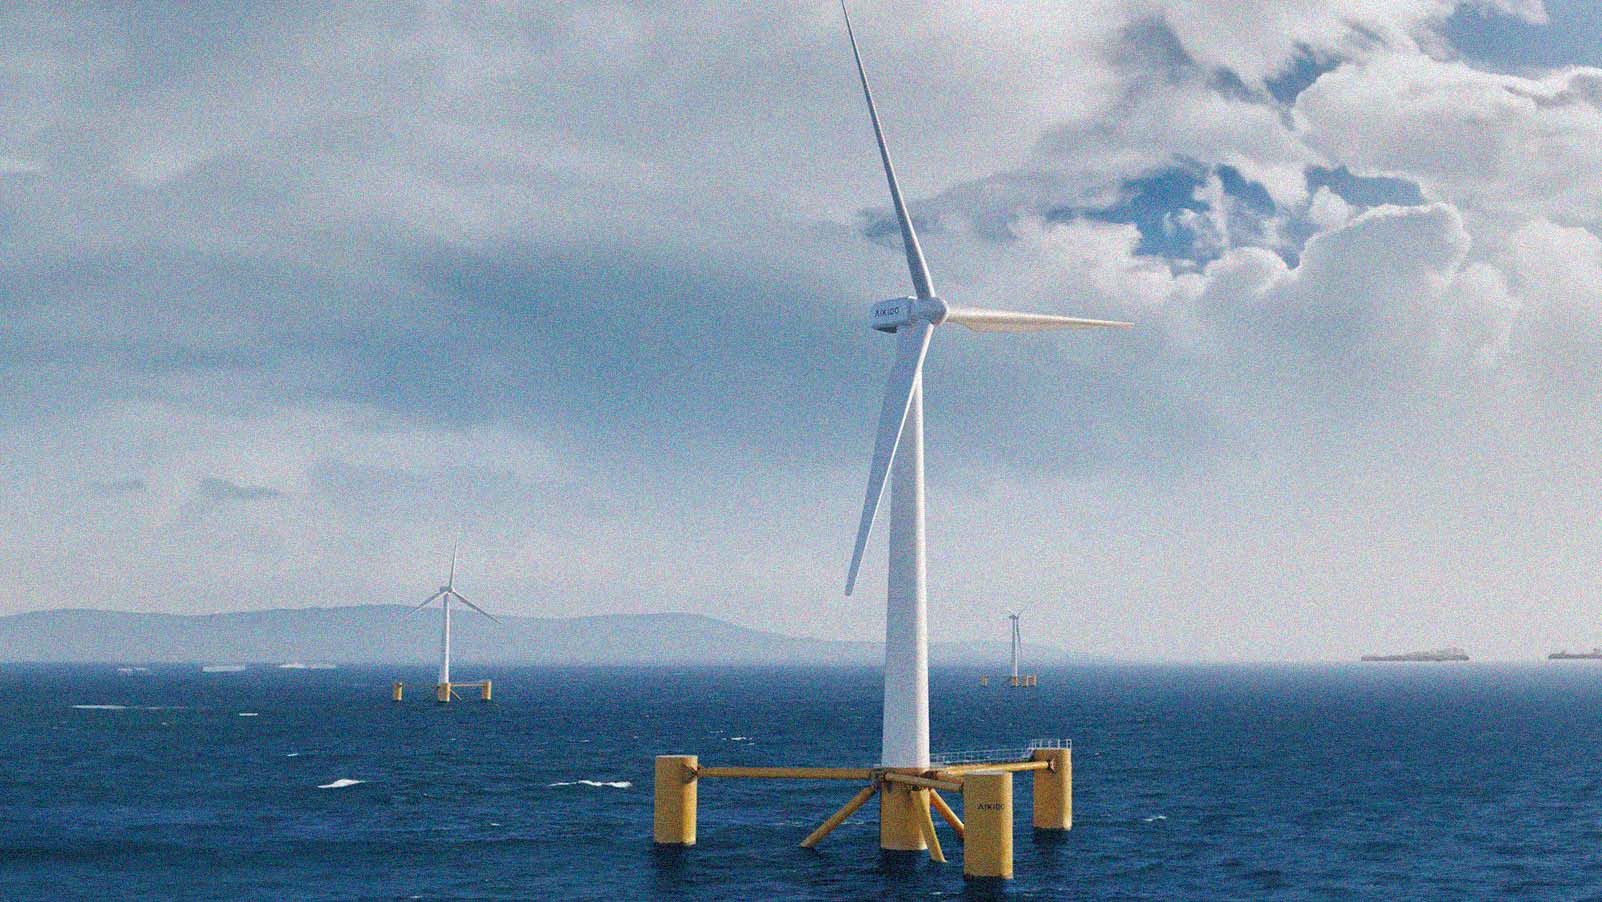 Novas tecnologias levam turbinas eólicas a alto mar – DW – 01/02/2013